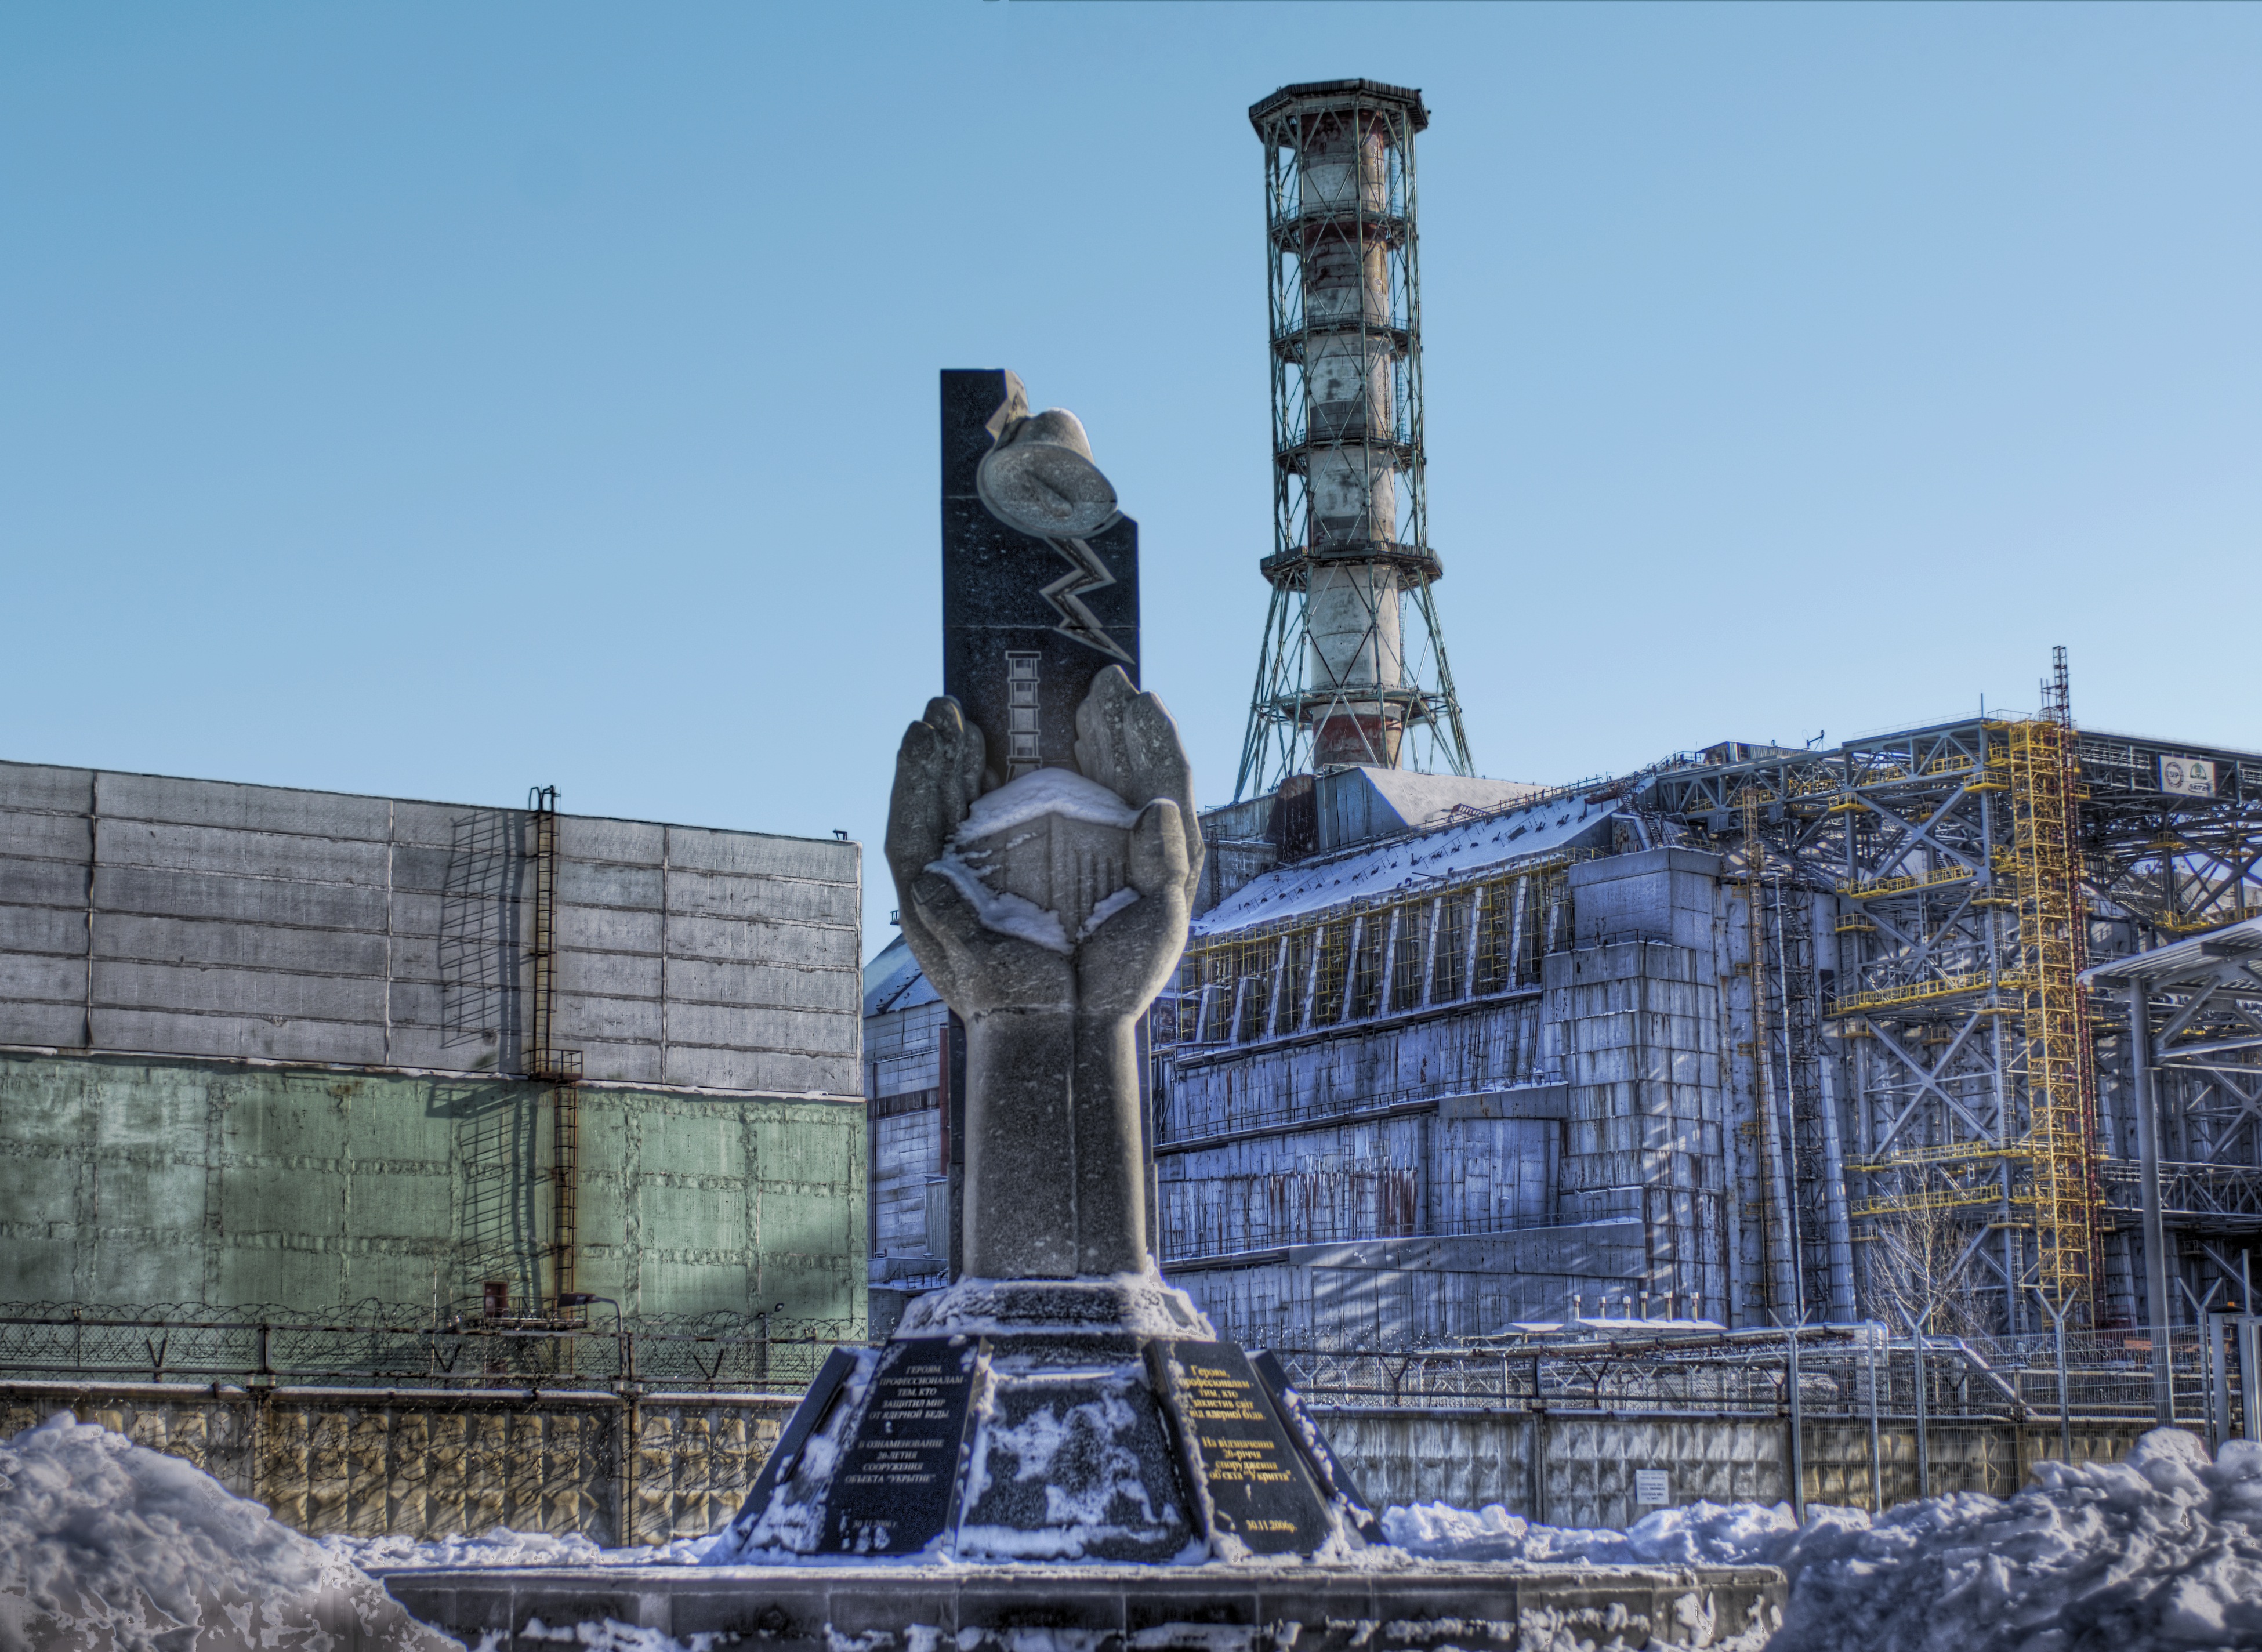 Http chernobyl. Чернобыль. Сталкер 4 энергоблок. Чернобыль АЭС. Фон Чернобыль ЧАЭС.